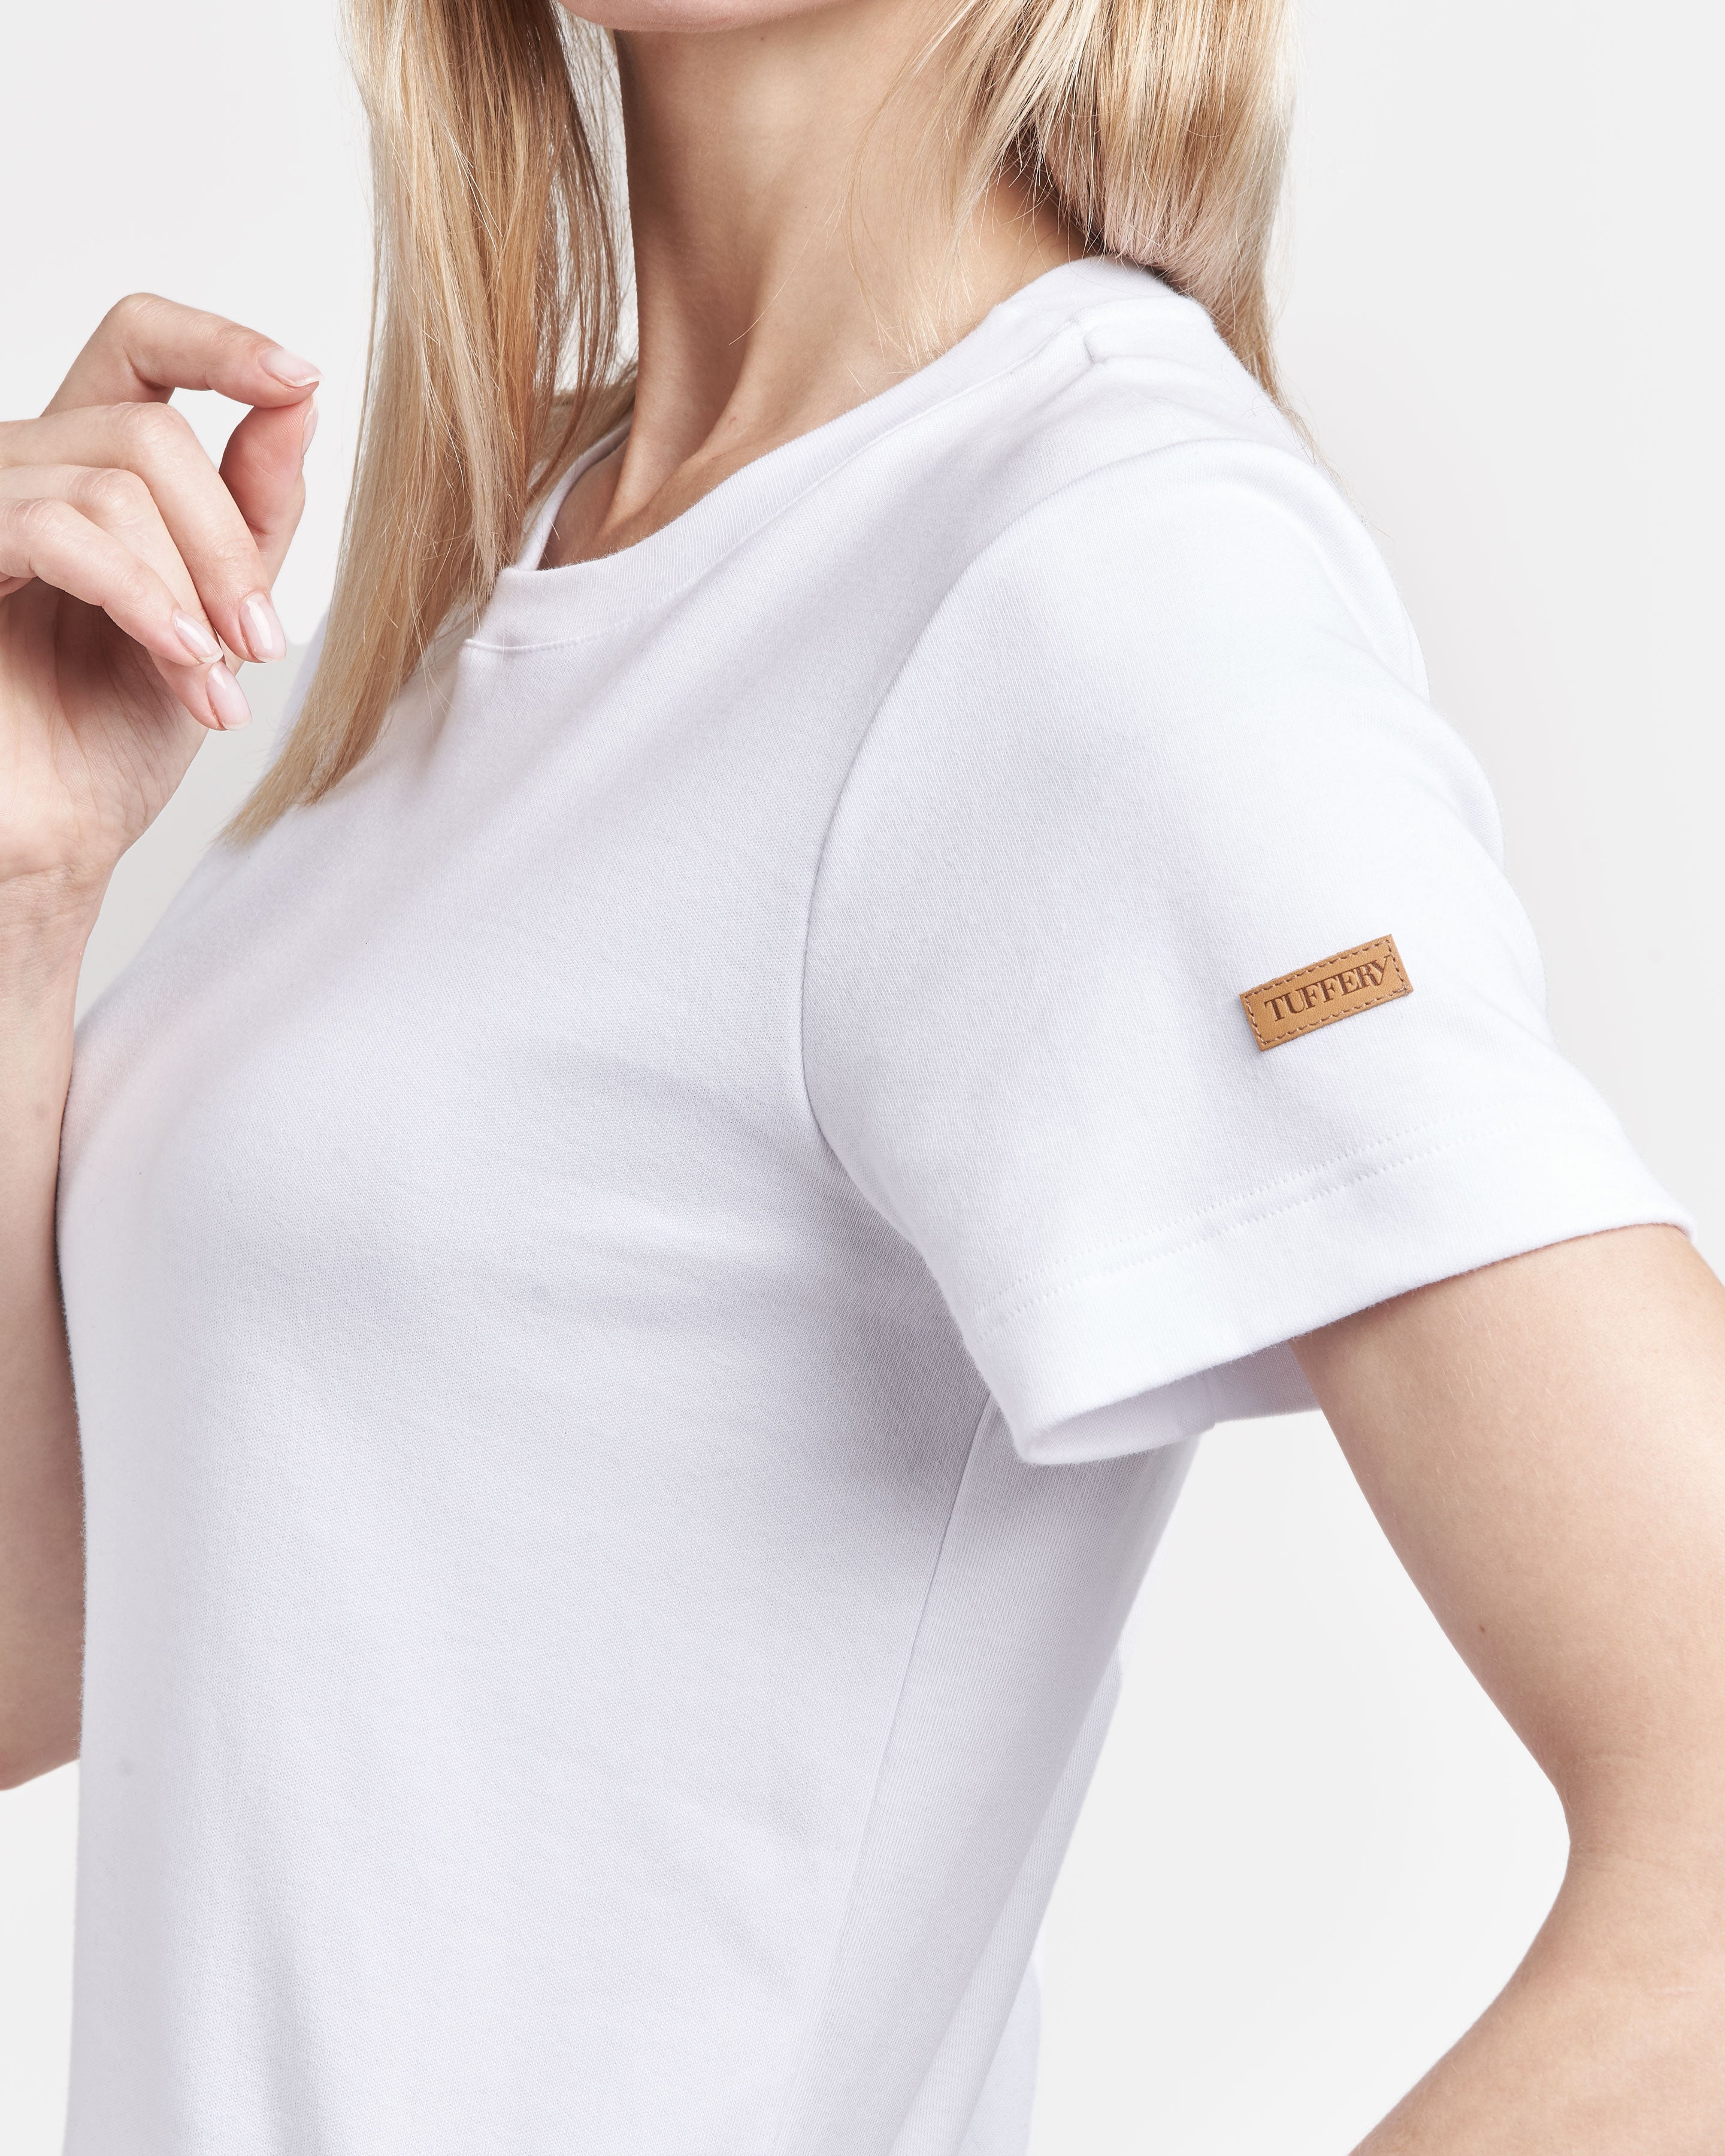 Tee-shirt blanc femme manche courte en coton organique